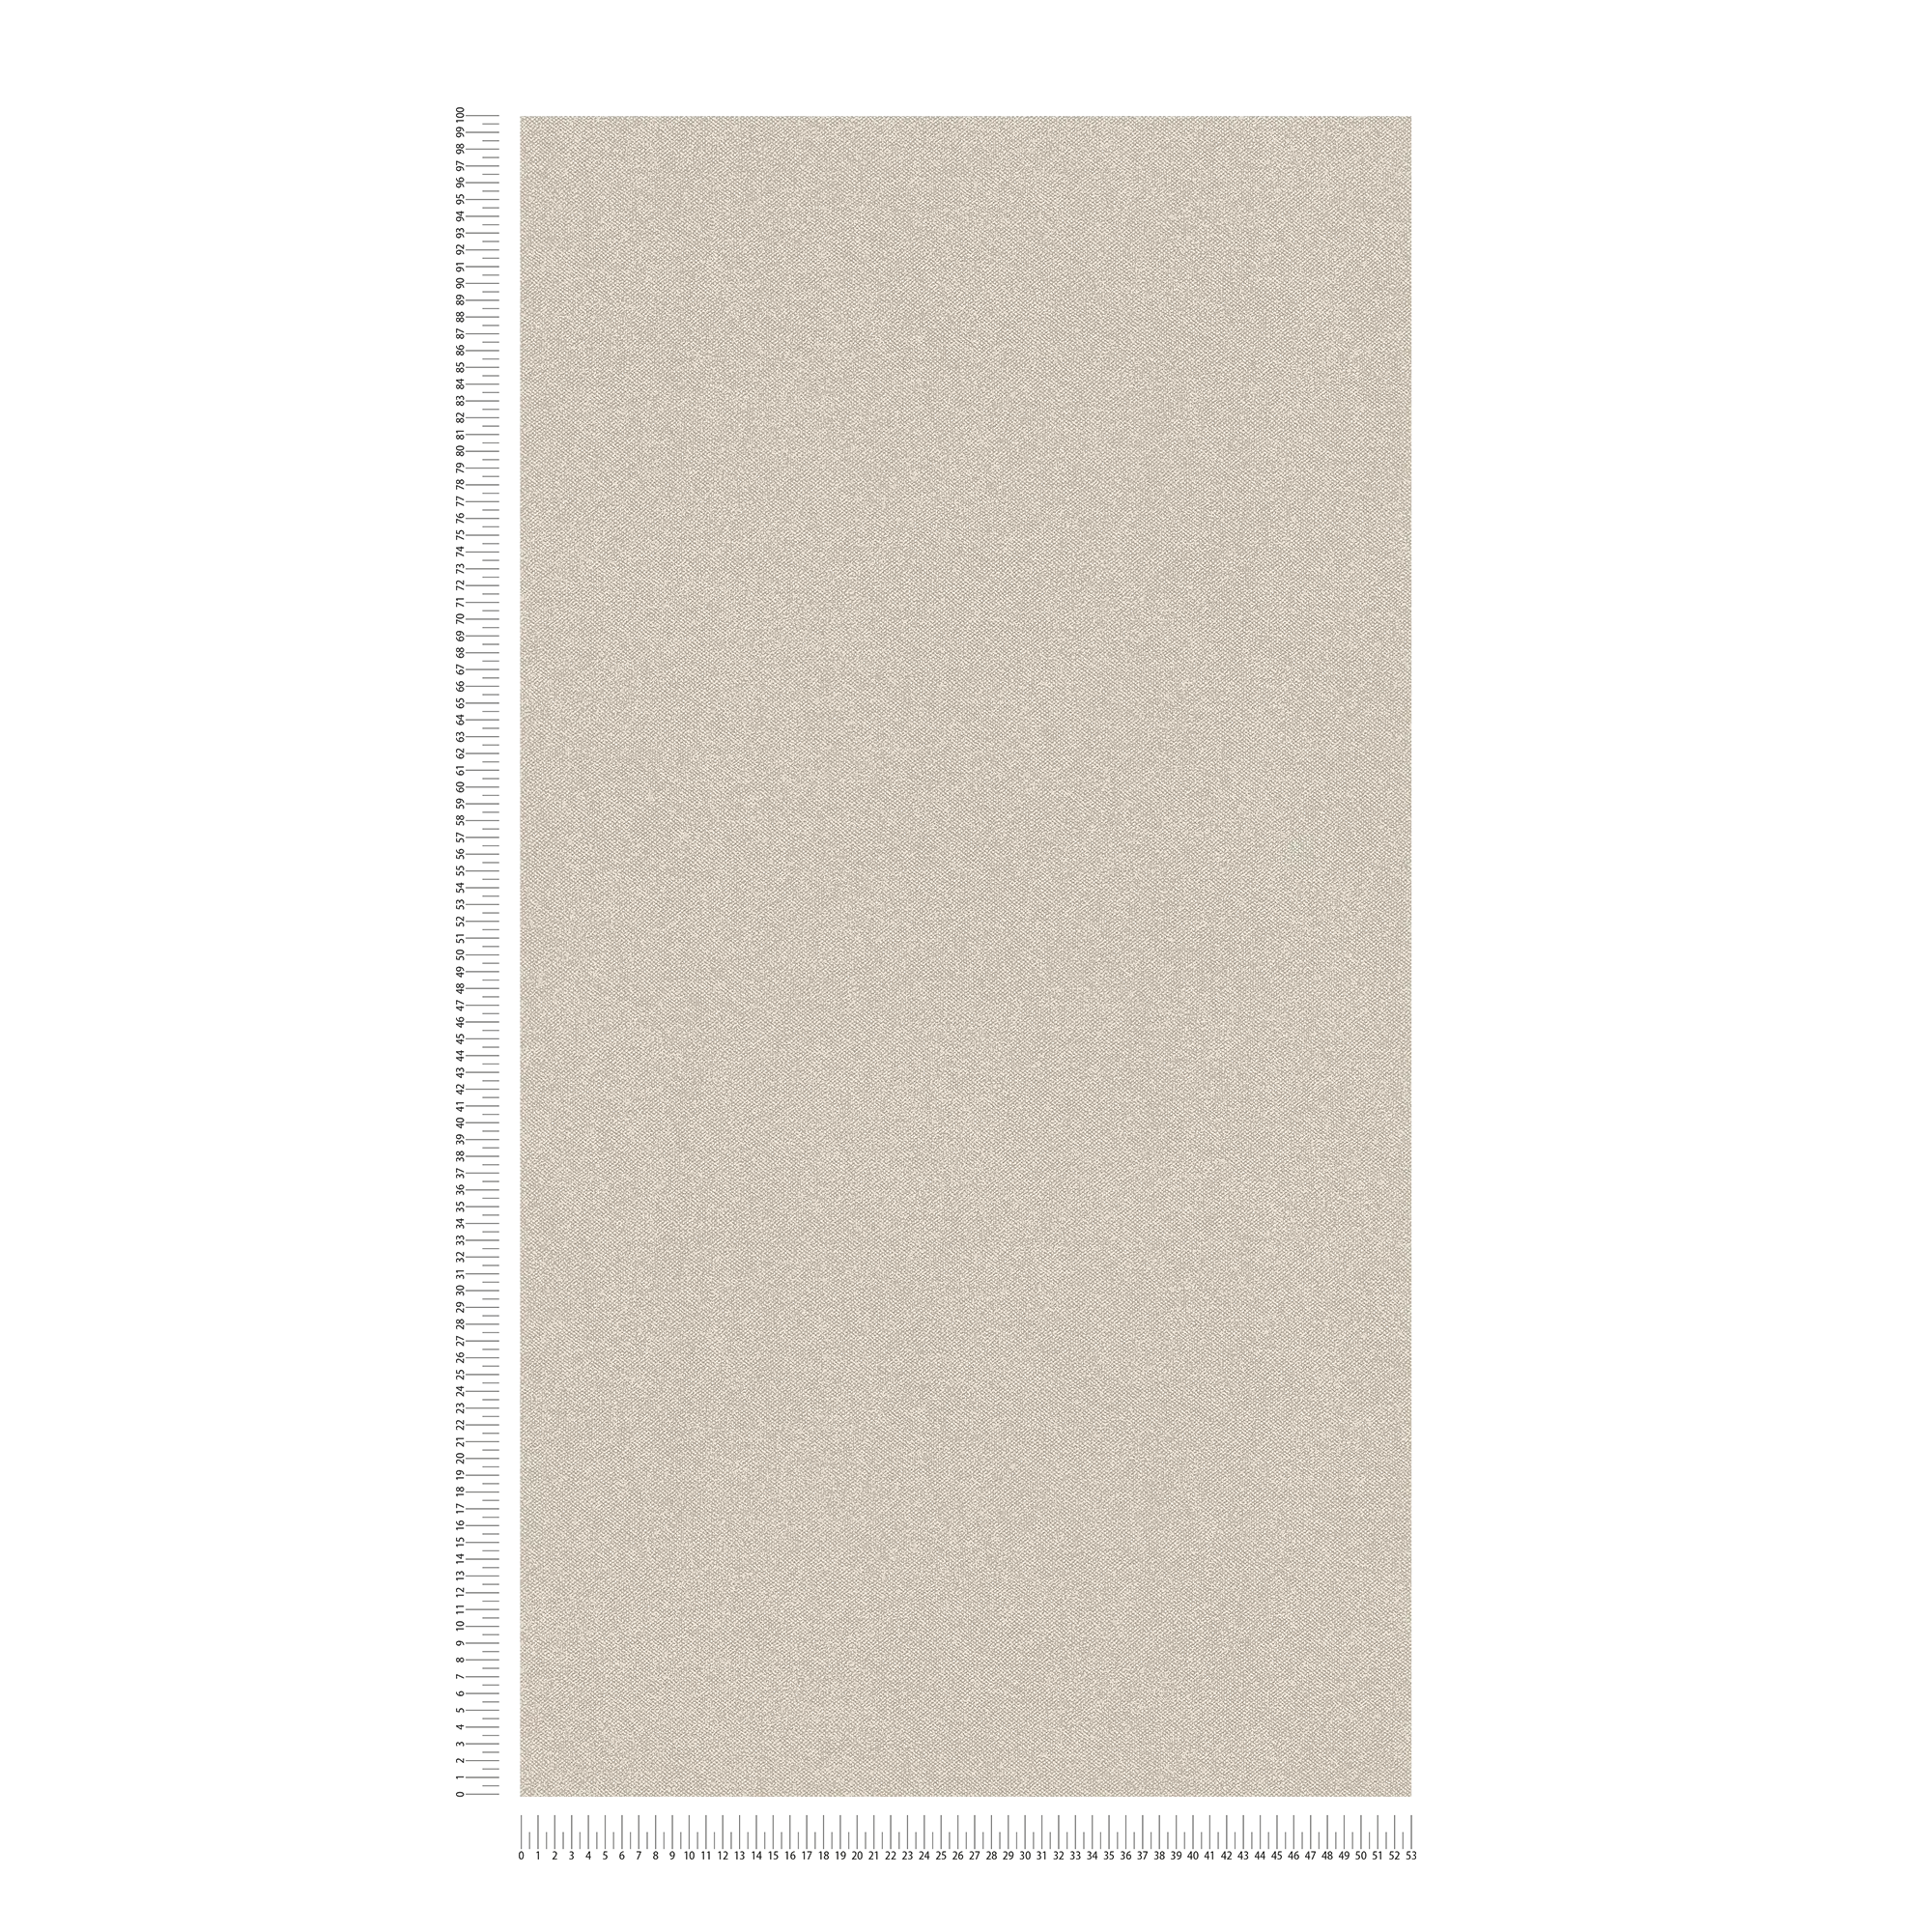             Papier peint à l'aspect textile uni - beige, crème
        